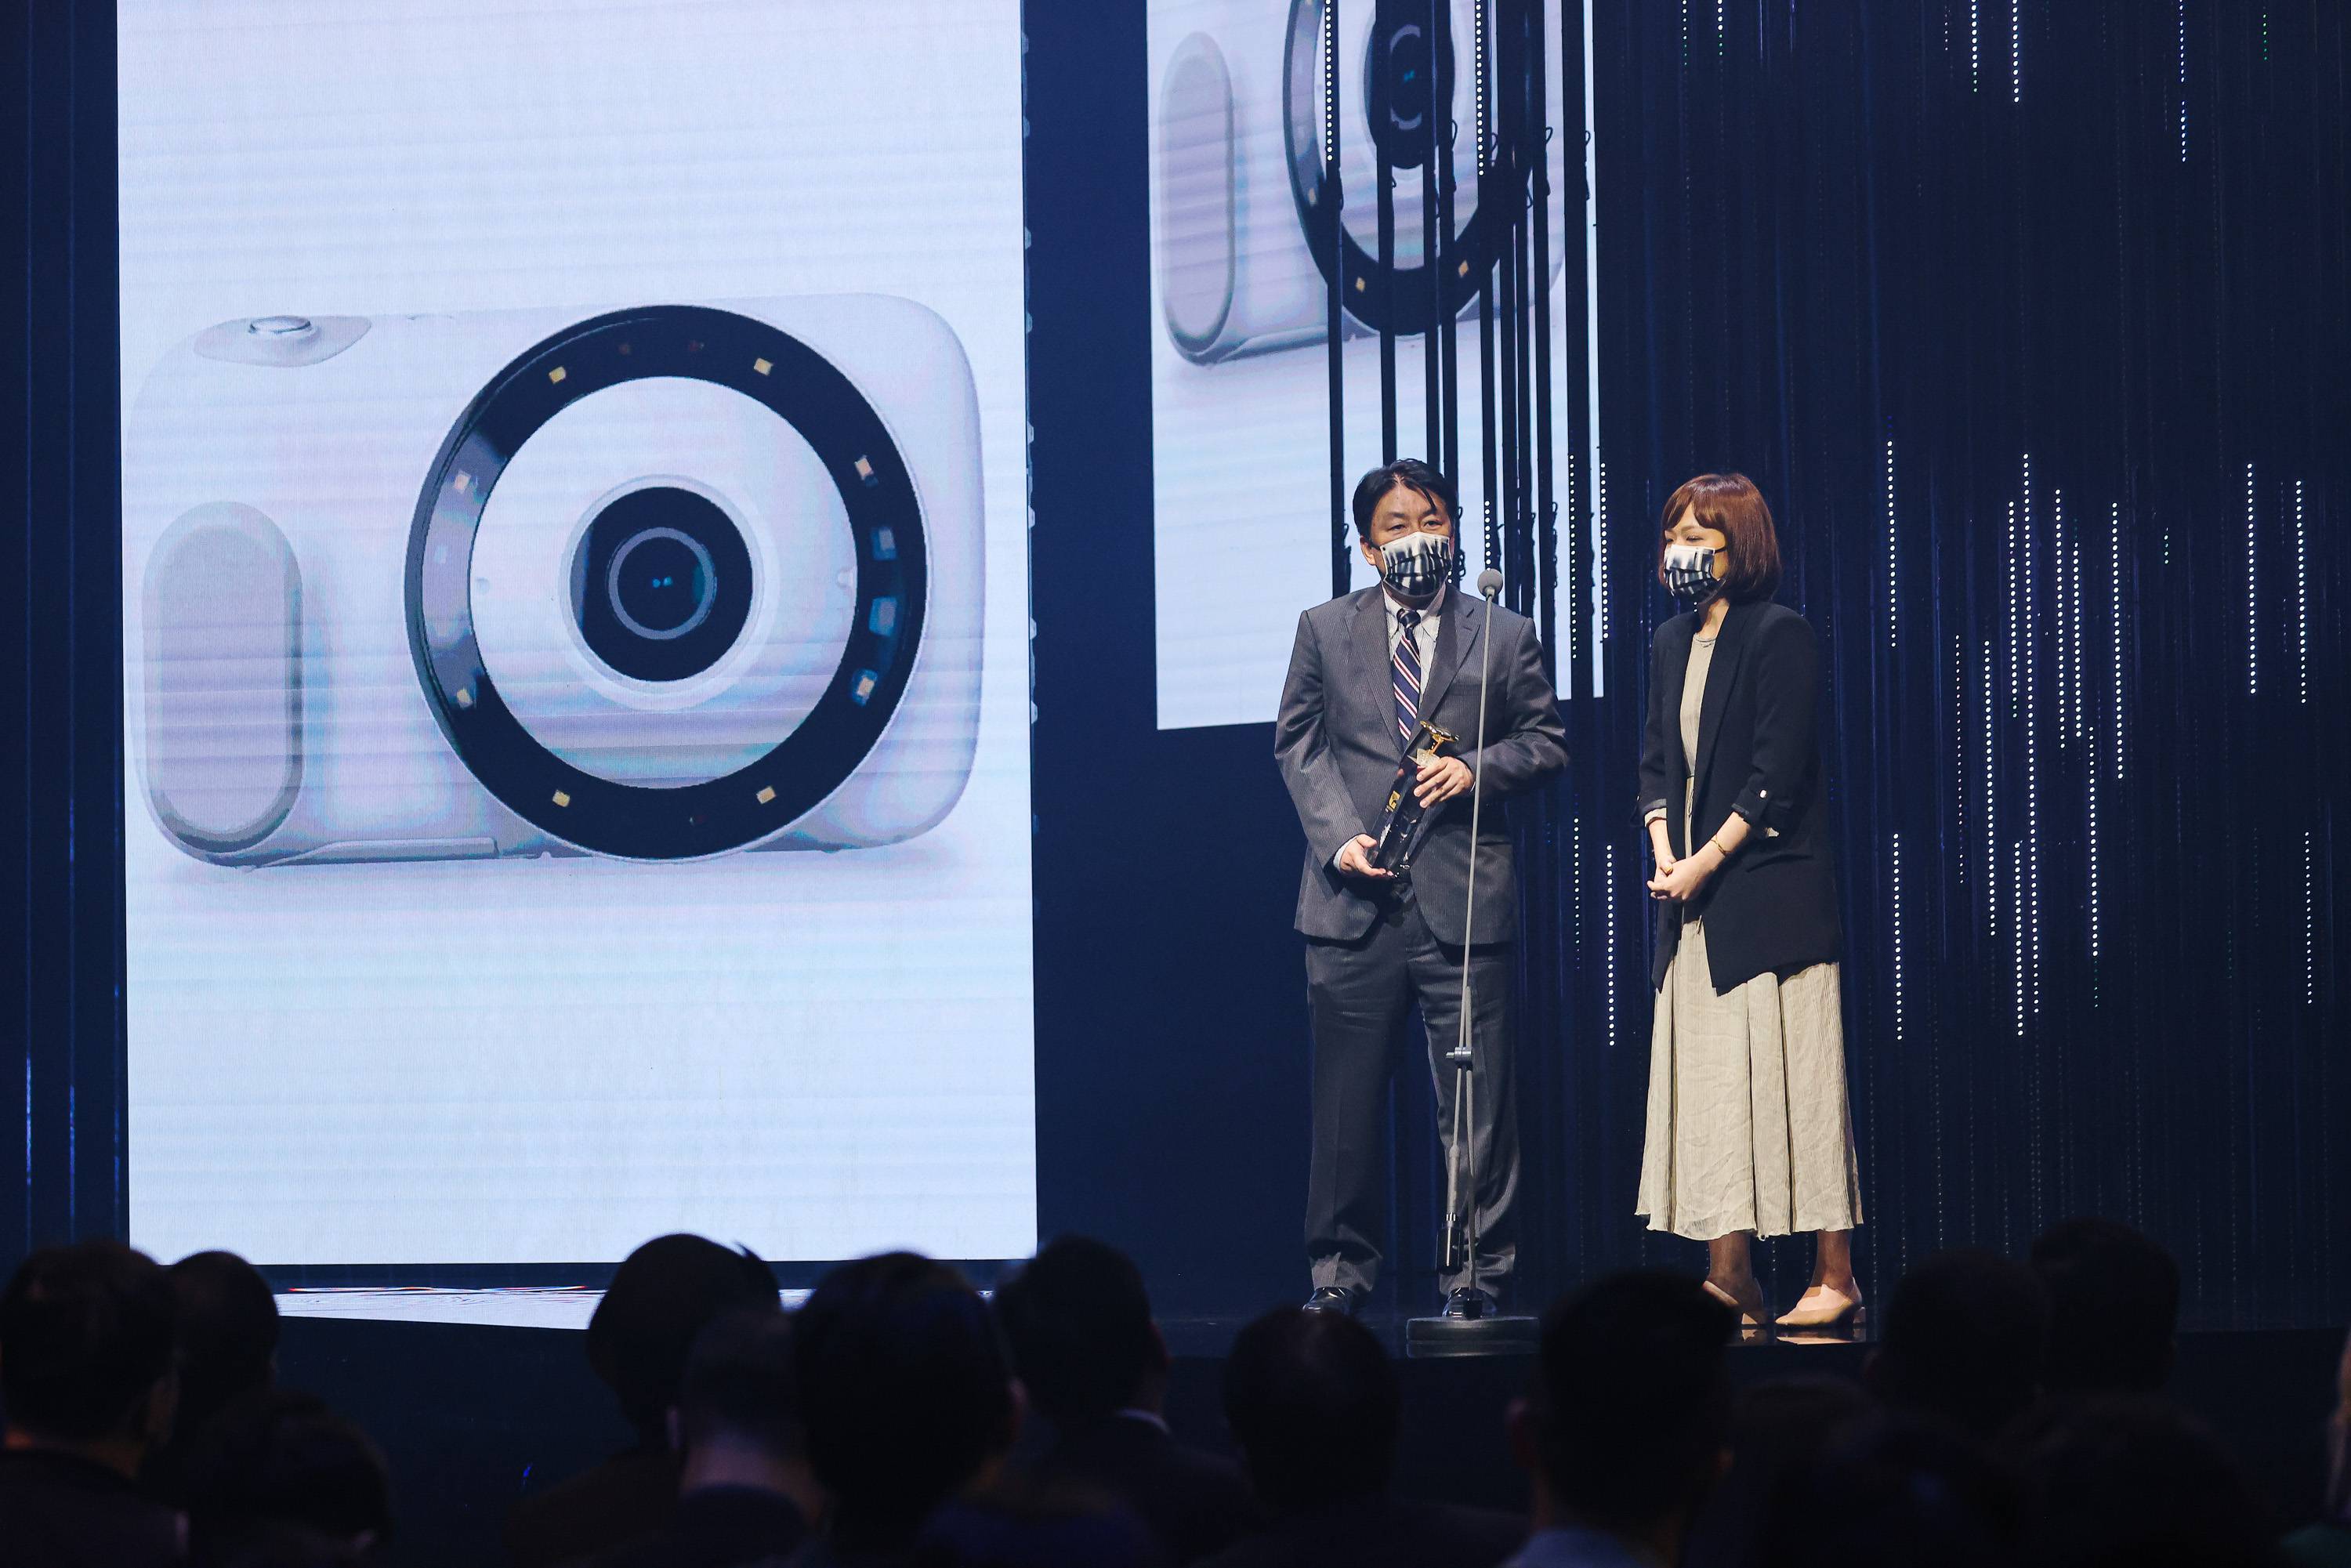 日本卡西欧计算机株式会社以创新皮肤摄影机获奖。(1).jpg